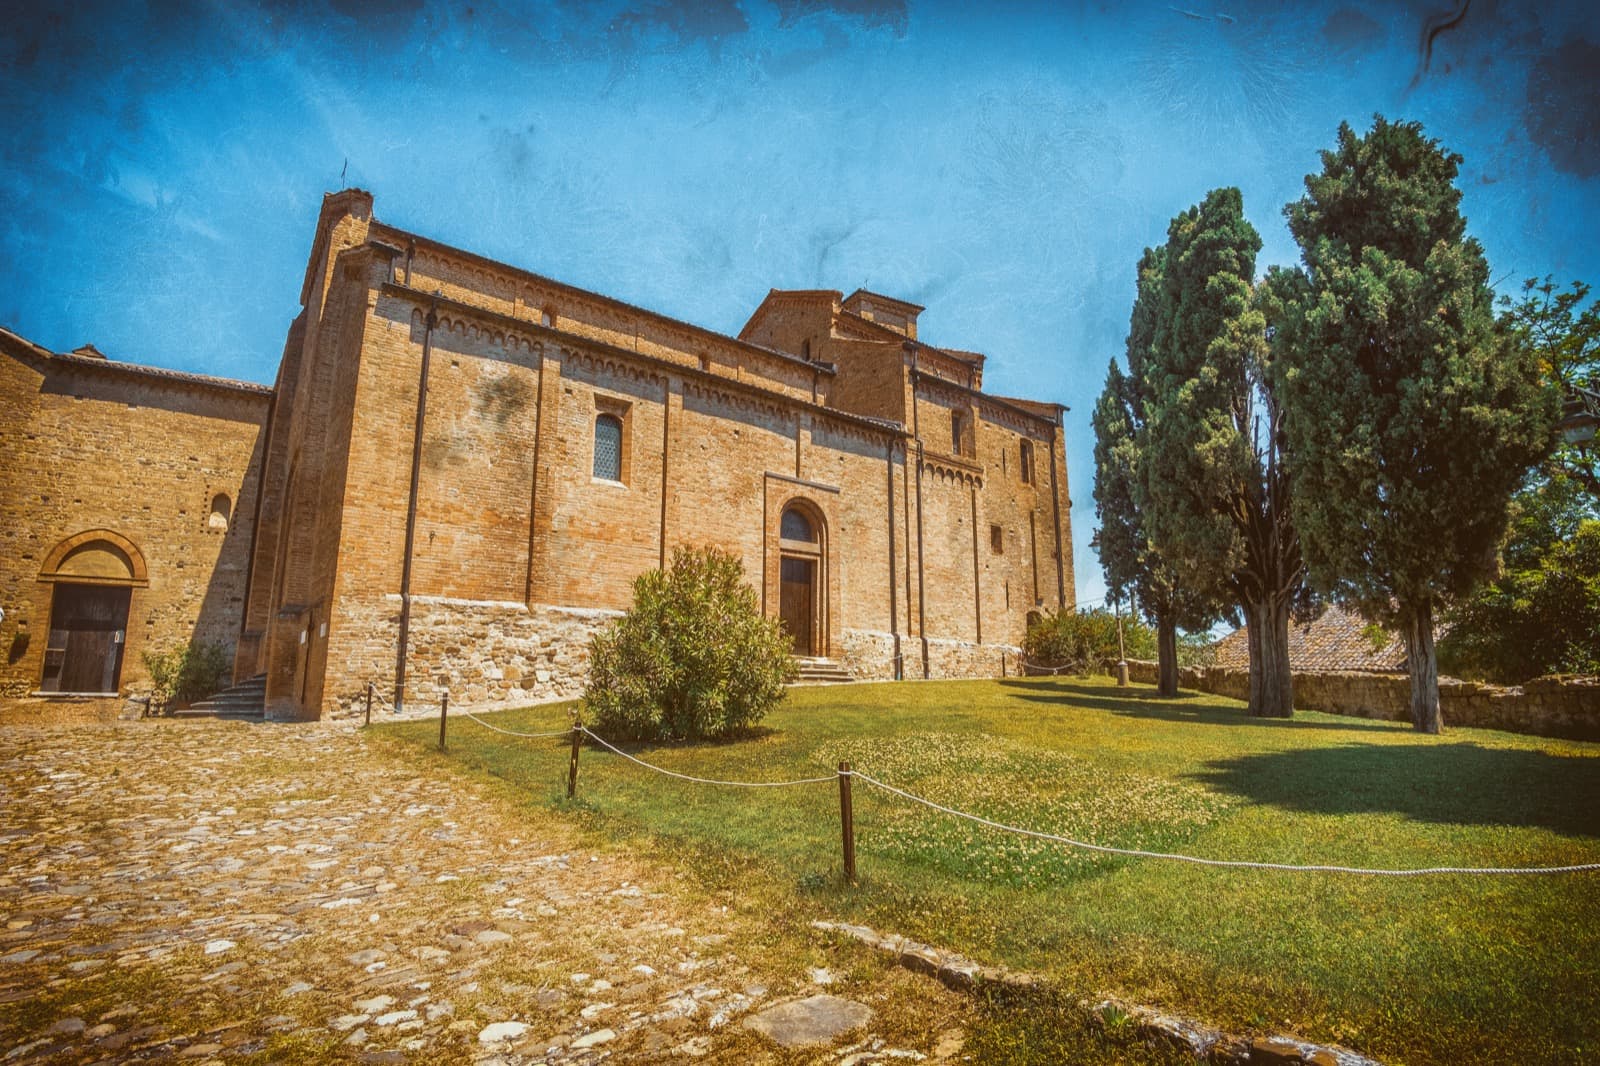 Monteveglio Abbey (Bologna) | Ph. Luca Lorenzelli, via shutterstock